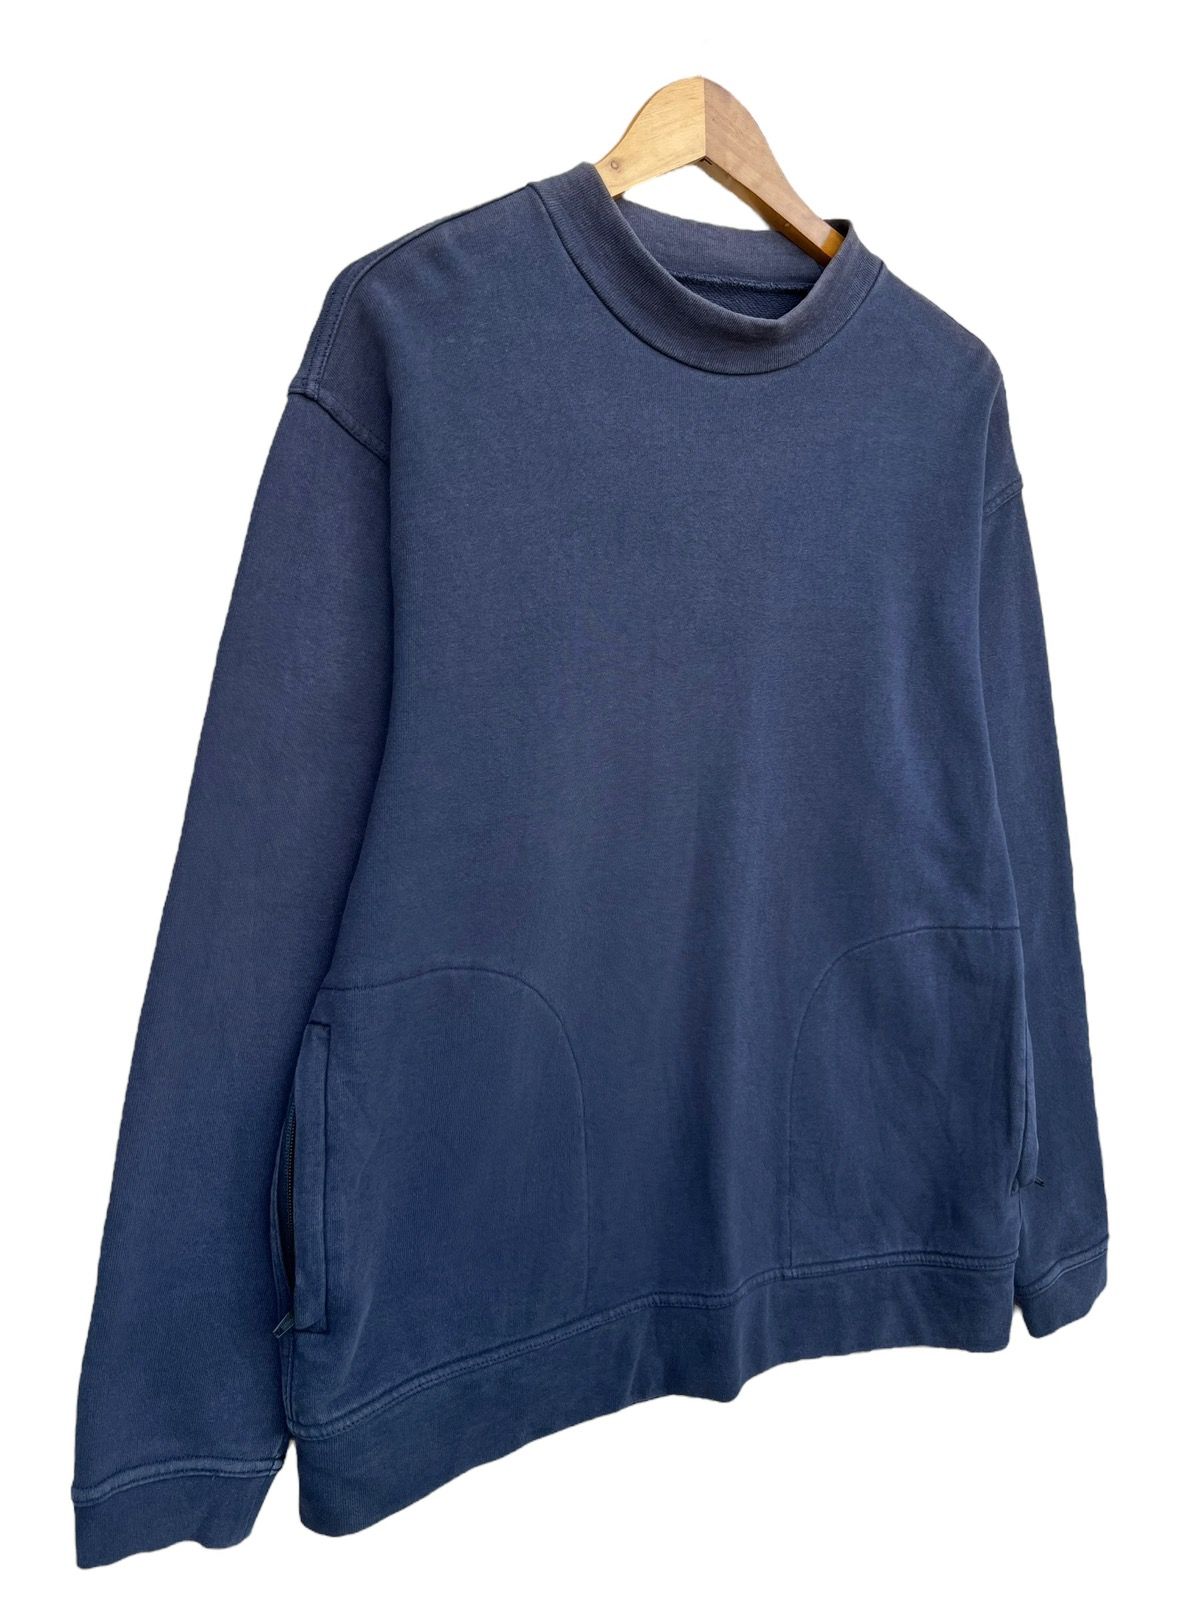 Vintage Beams Plus Japan Style Sweater Mock Neck Sweatshirt - 2